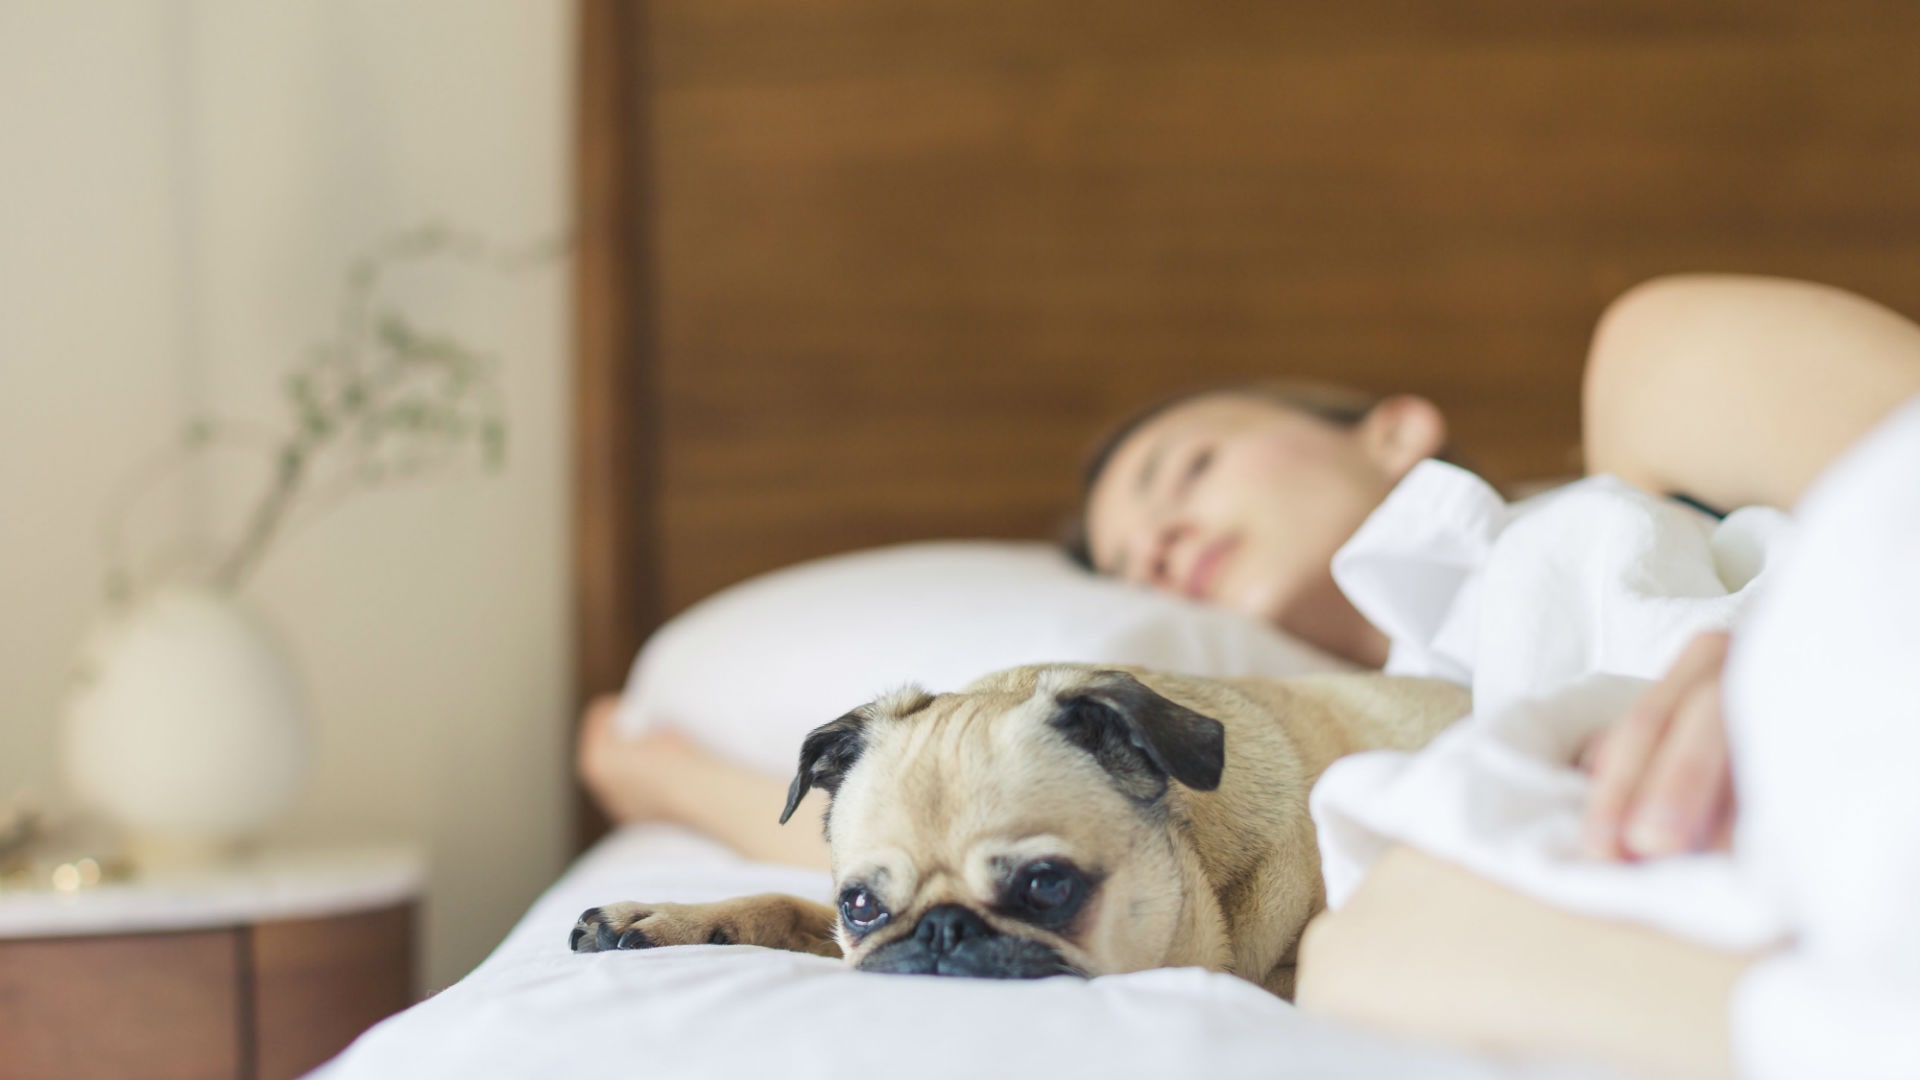 Foto de capa do artigo "Mito ou verdade: o que realmente funciona para dormir bem?"